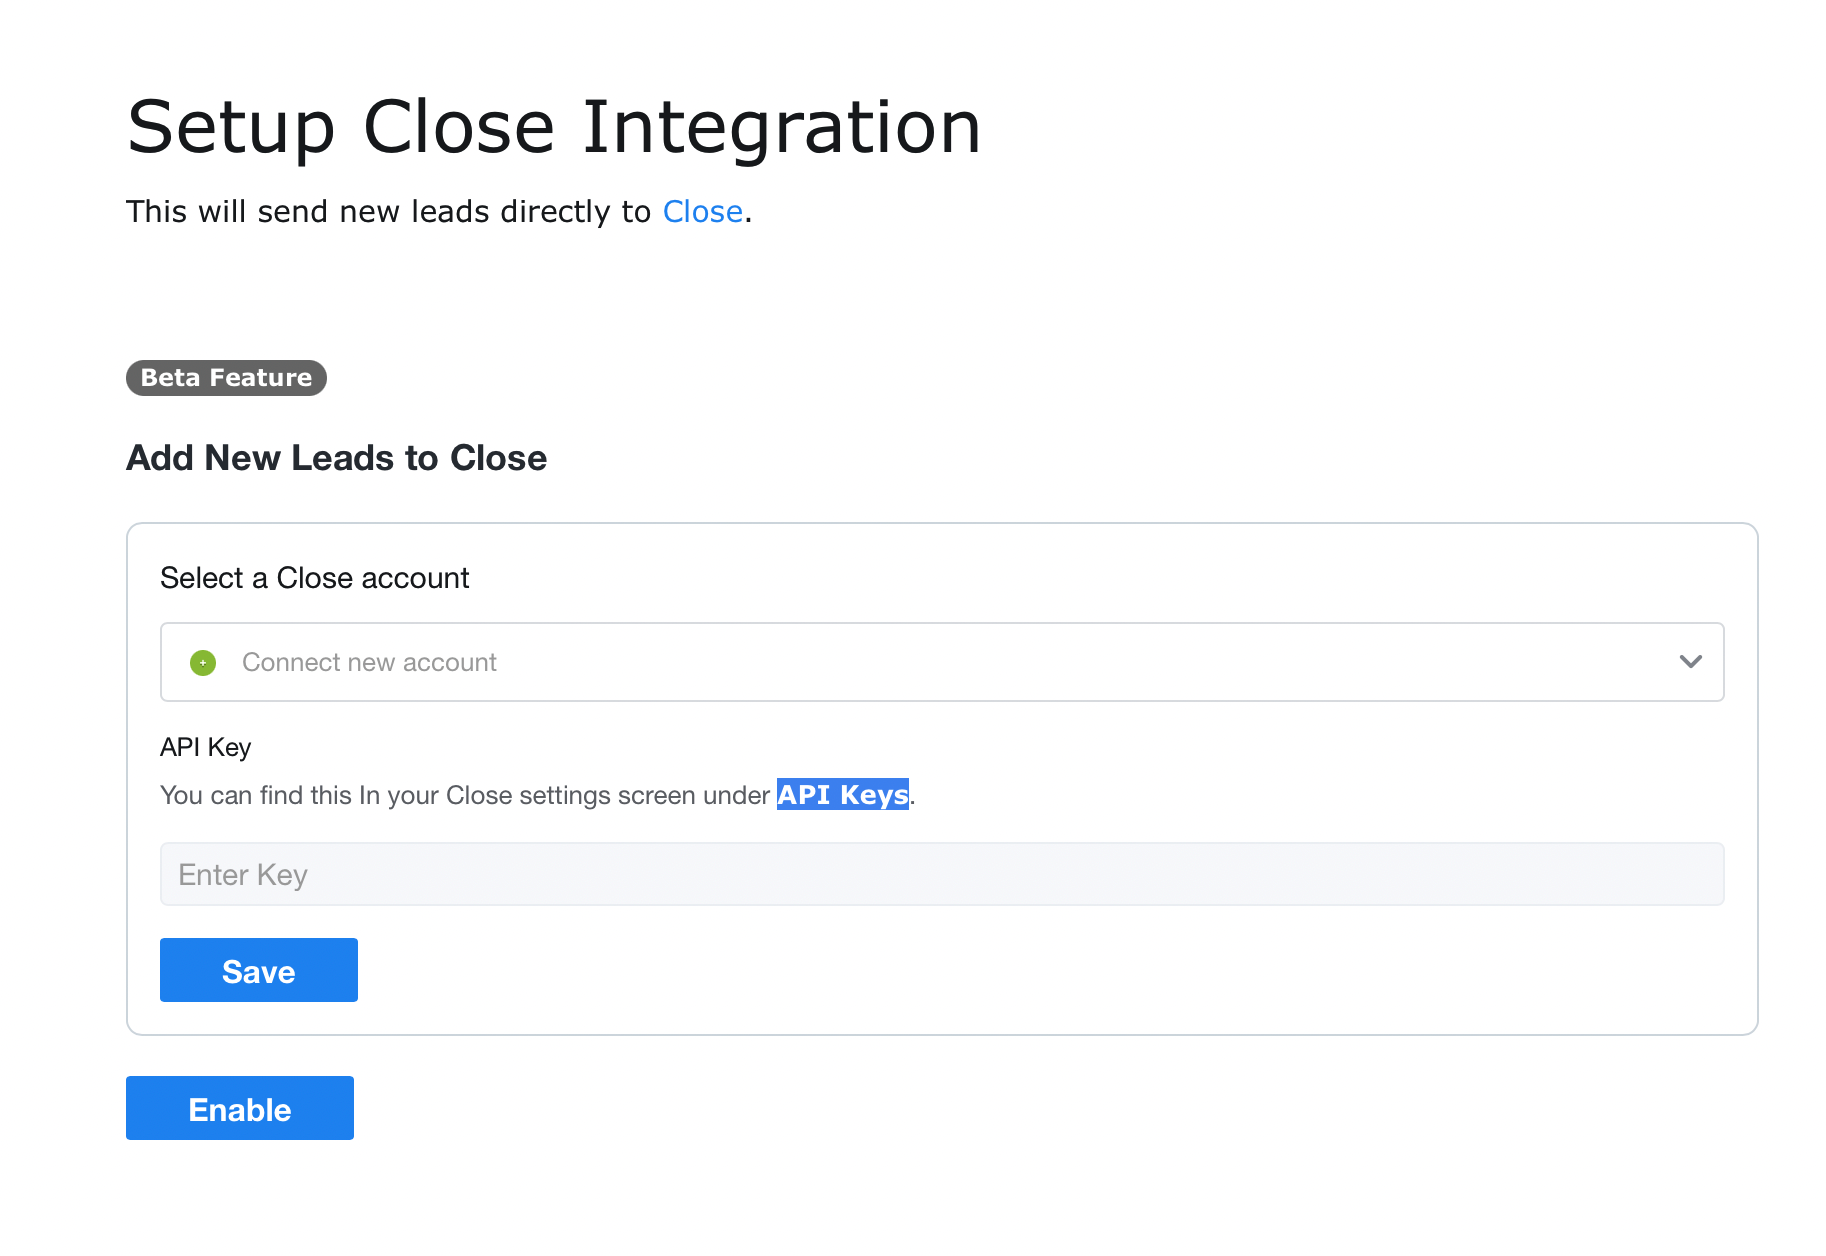 Connect to Close via API key